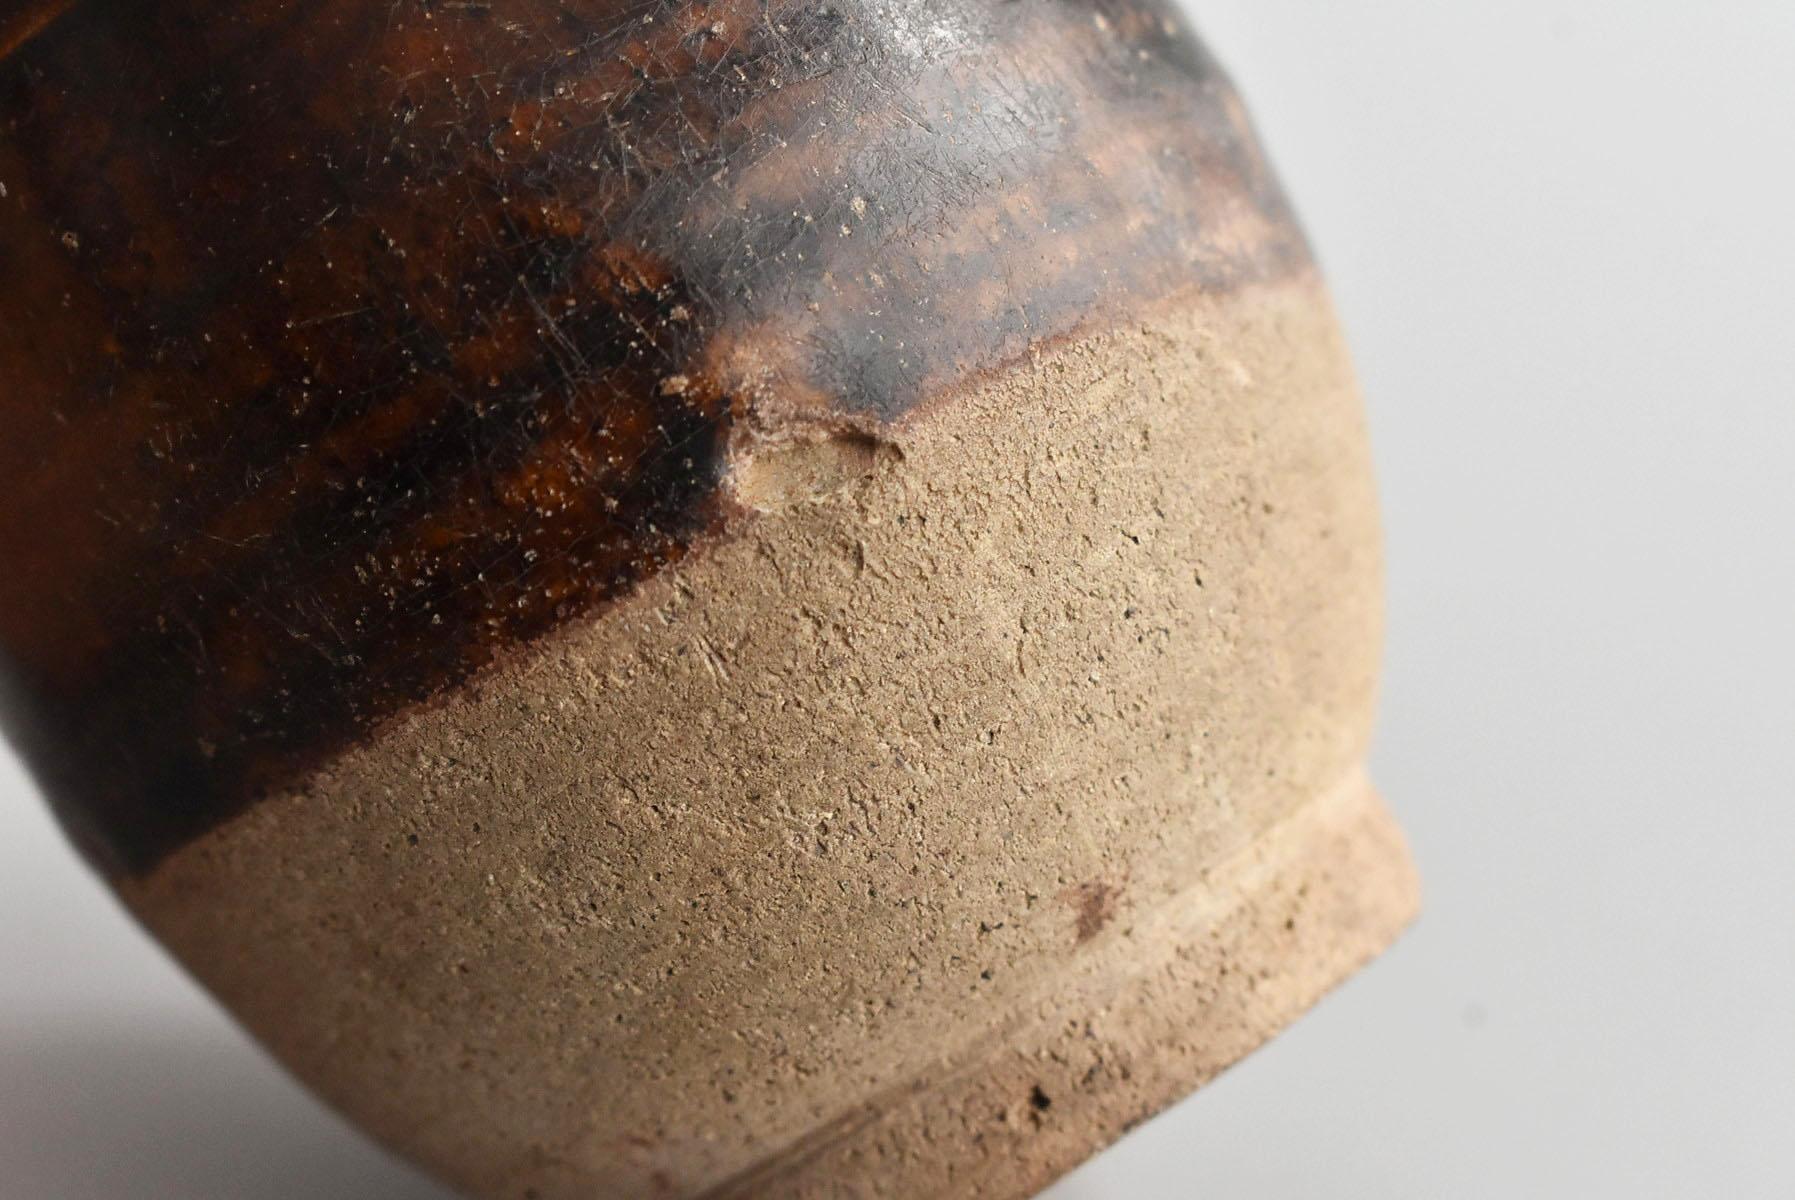 Thai Antique Bottle 15th Century / Old Vase / Southeast Asian Antiques 5